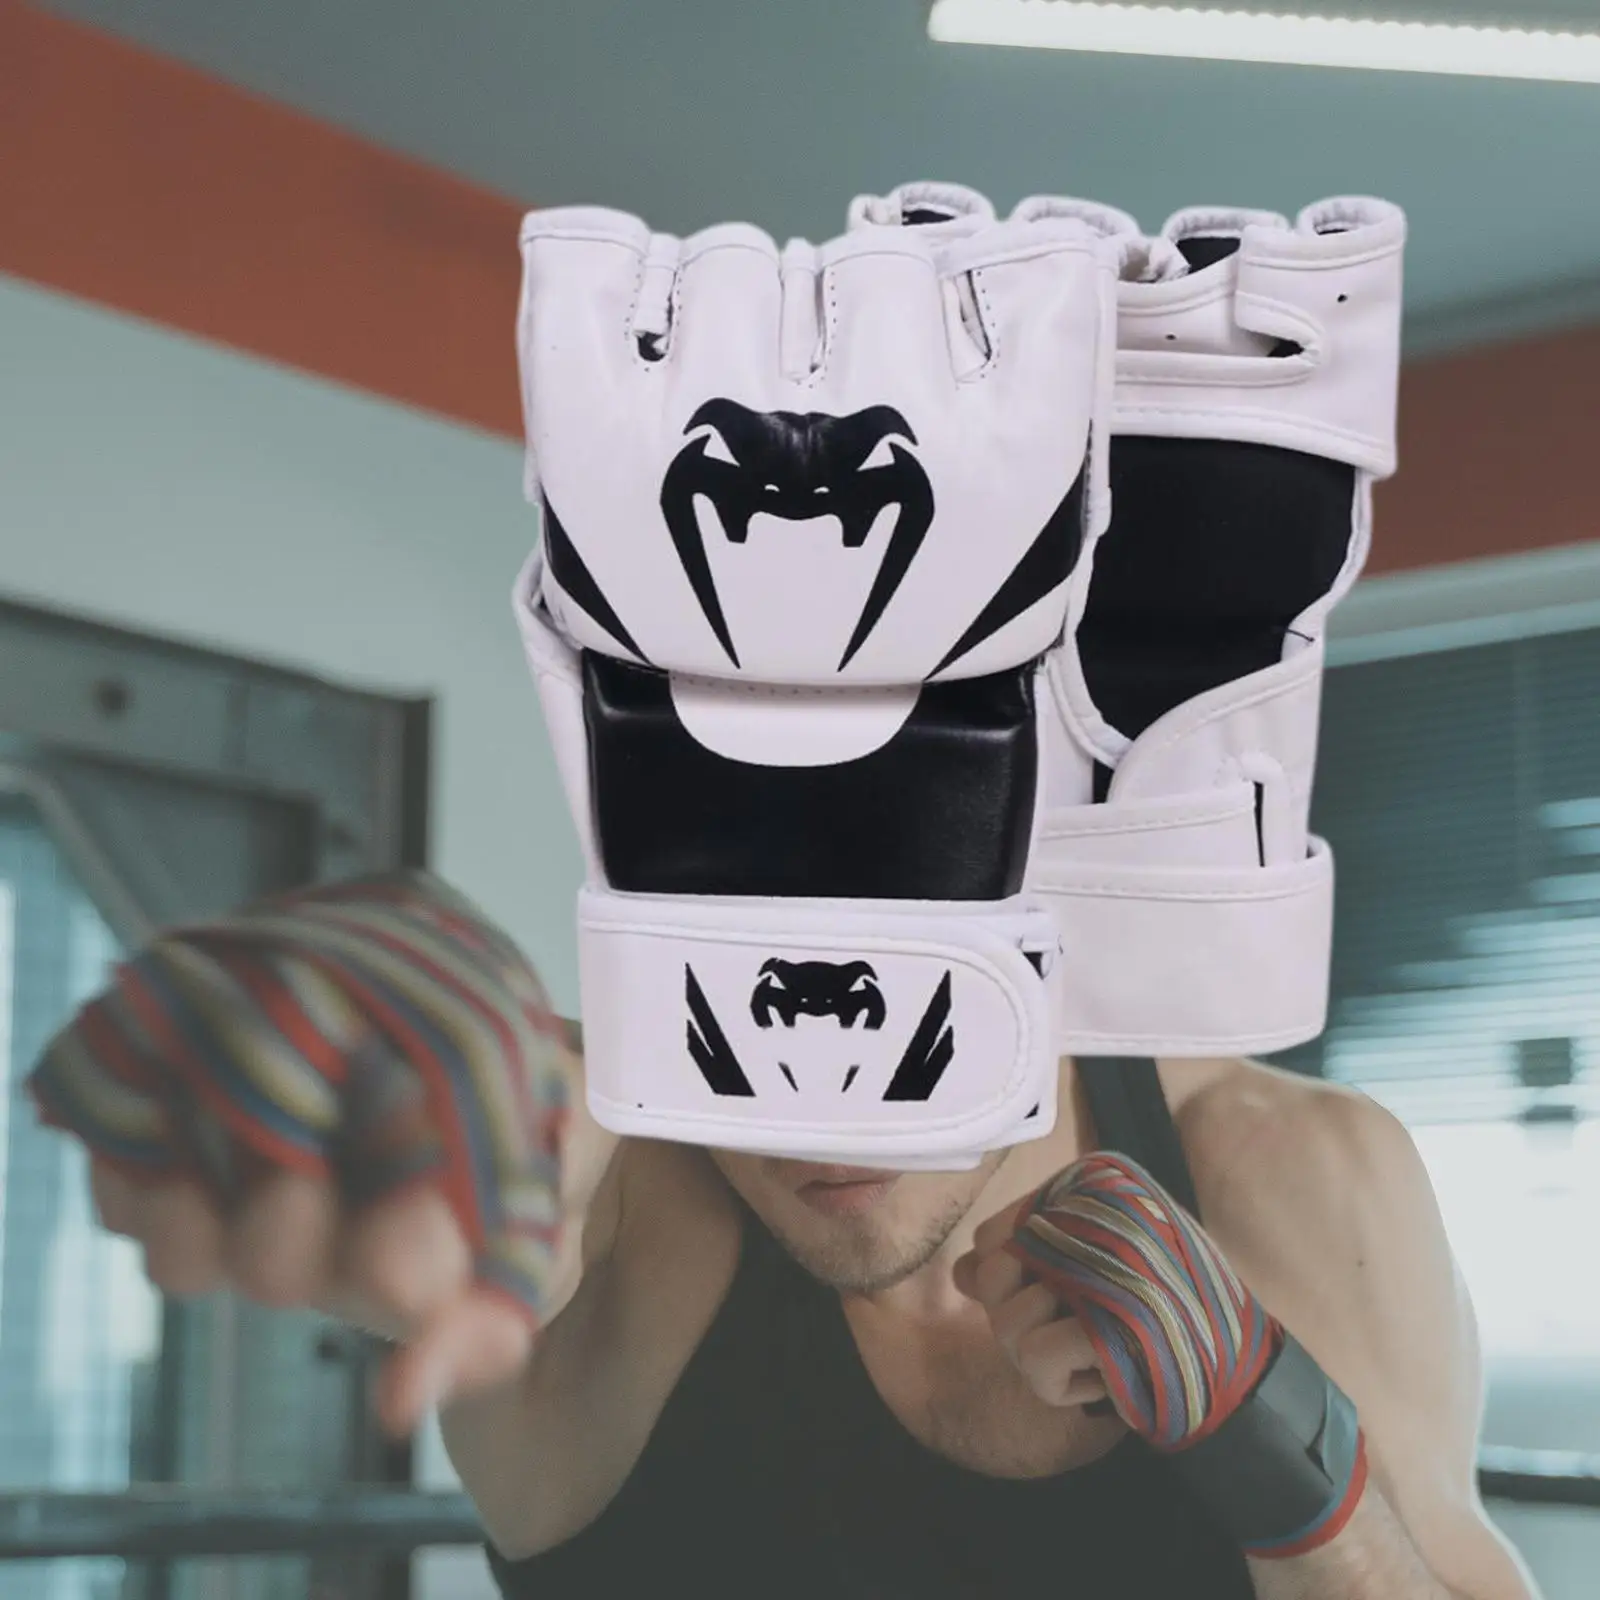 Ръкавици за Мма и Устойчиви на натиск Ръкавици за кикбоксинга за тренировки Унисекс за мъже и жени